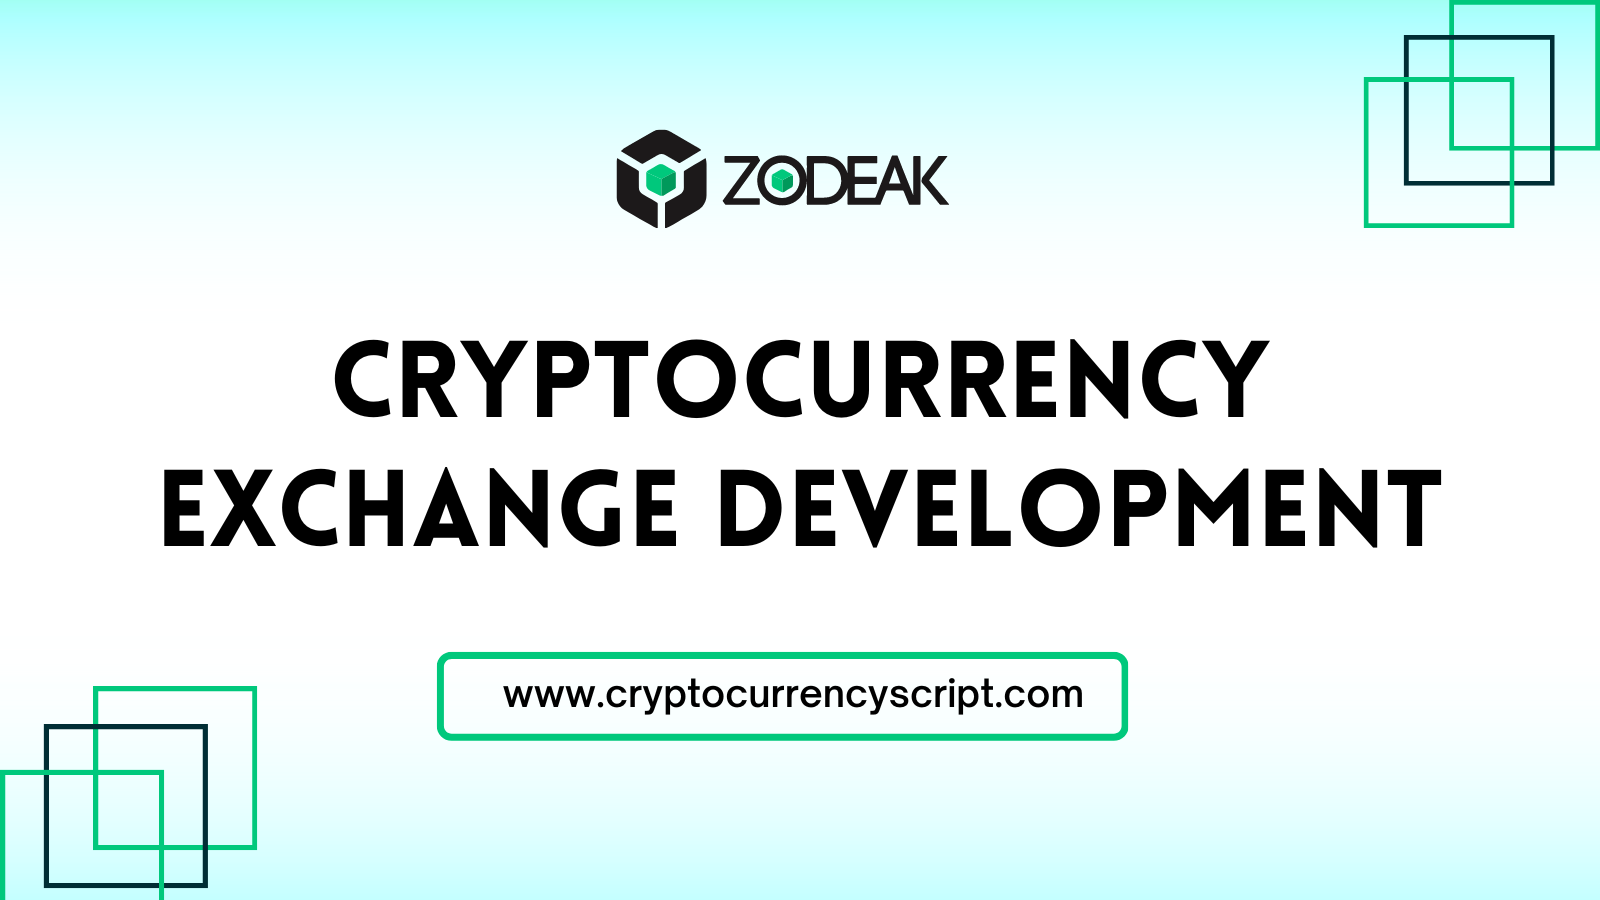 Cryptocurrency Exchange Development Company | Zodeak